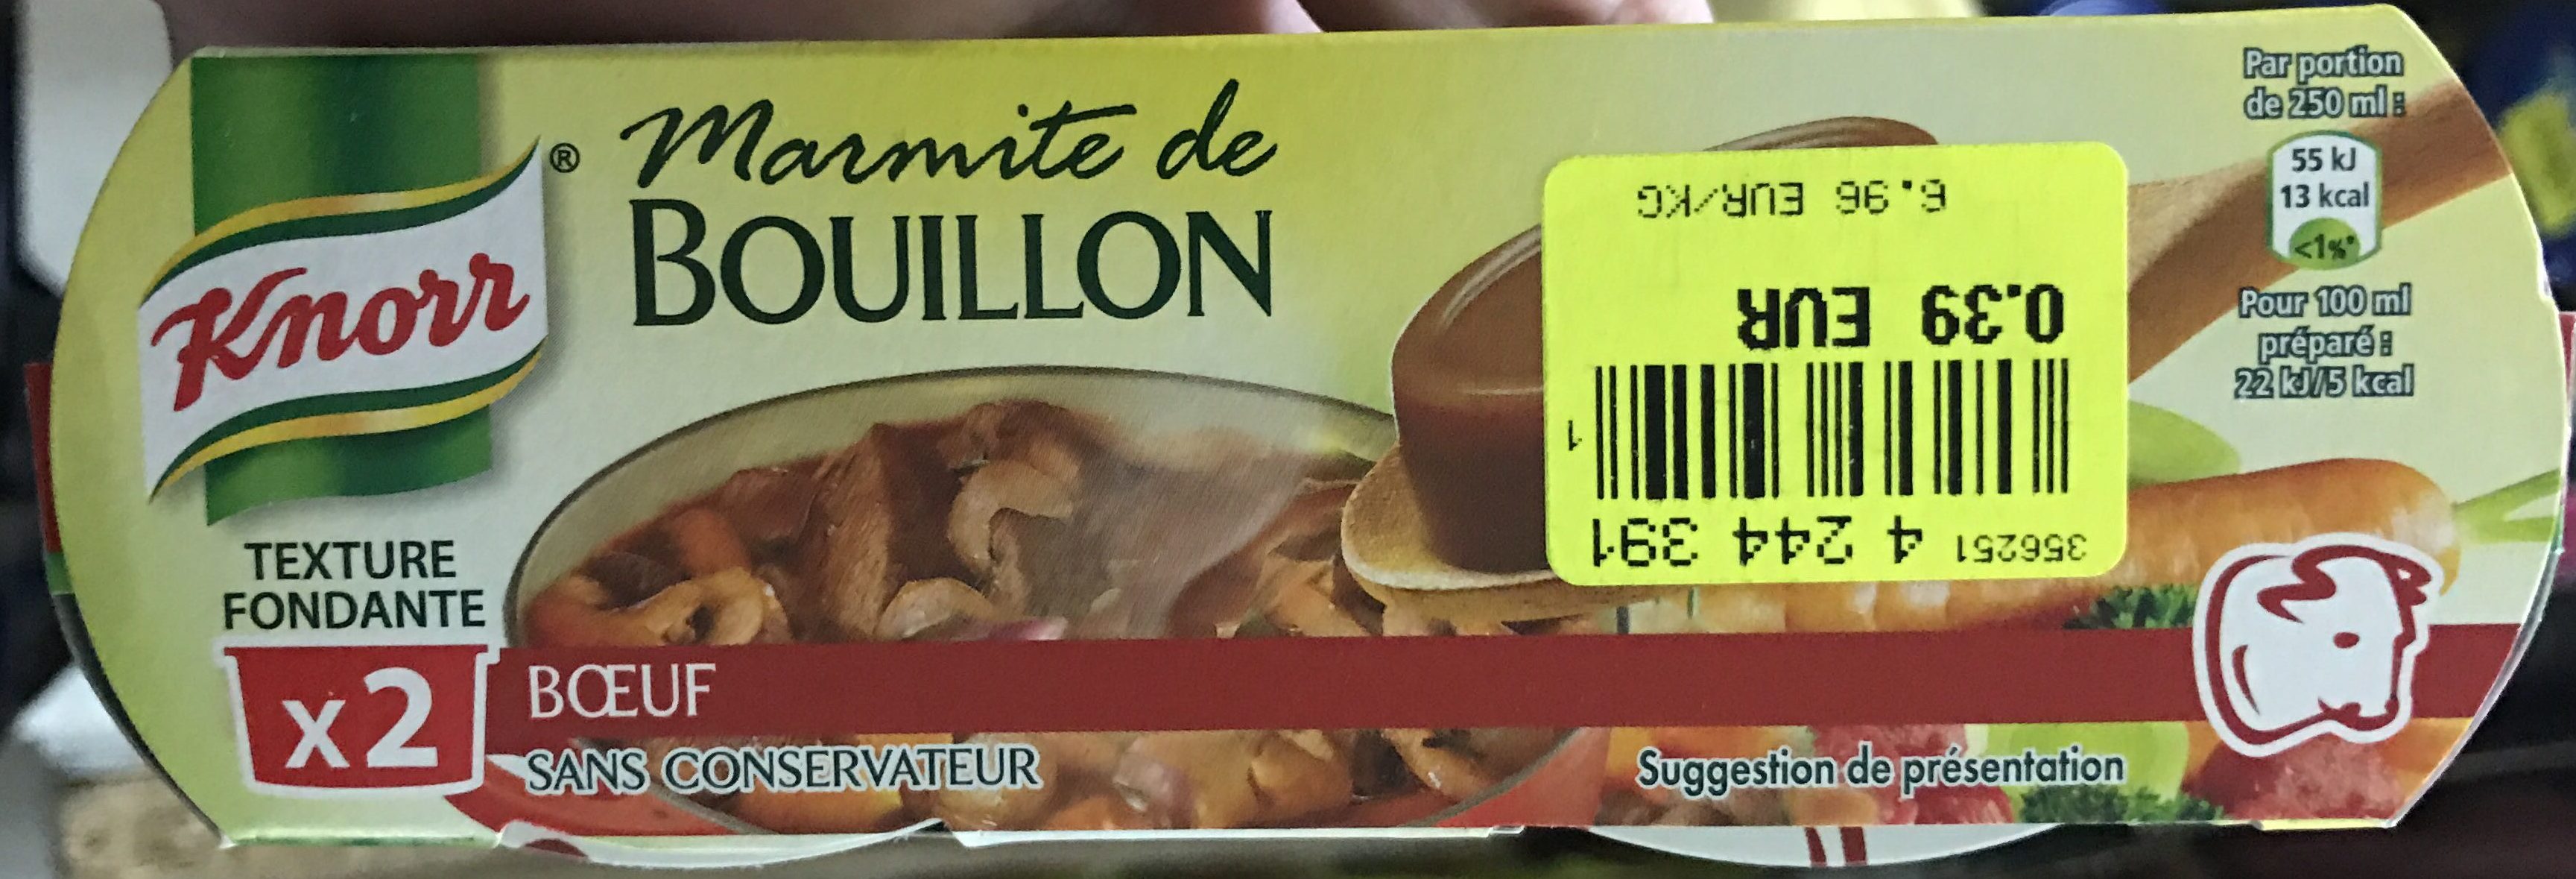 Marmite de Bouillon Bœuf - Producto - fr